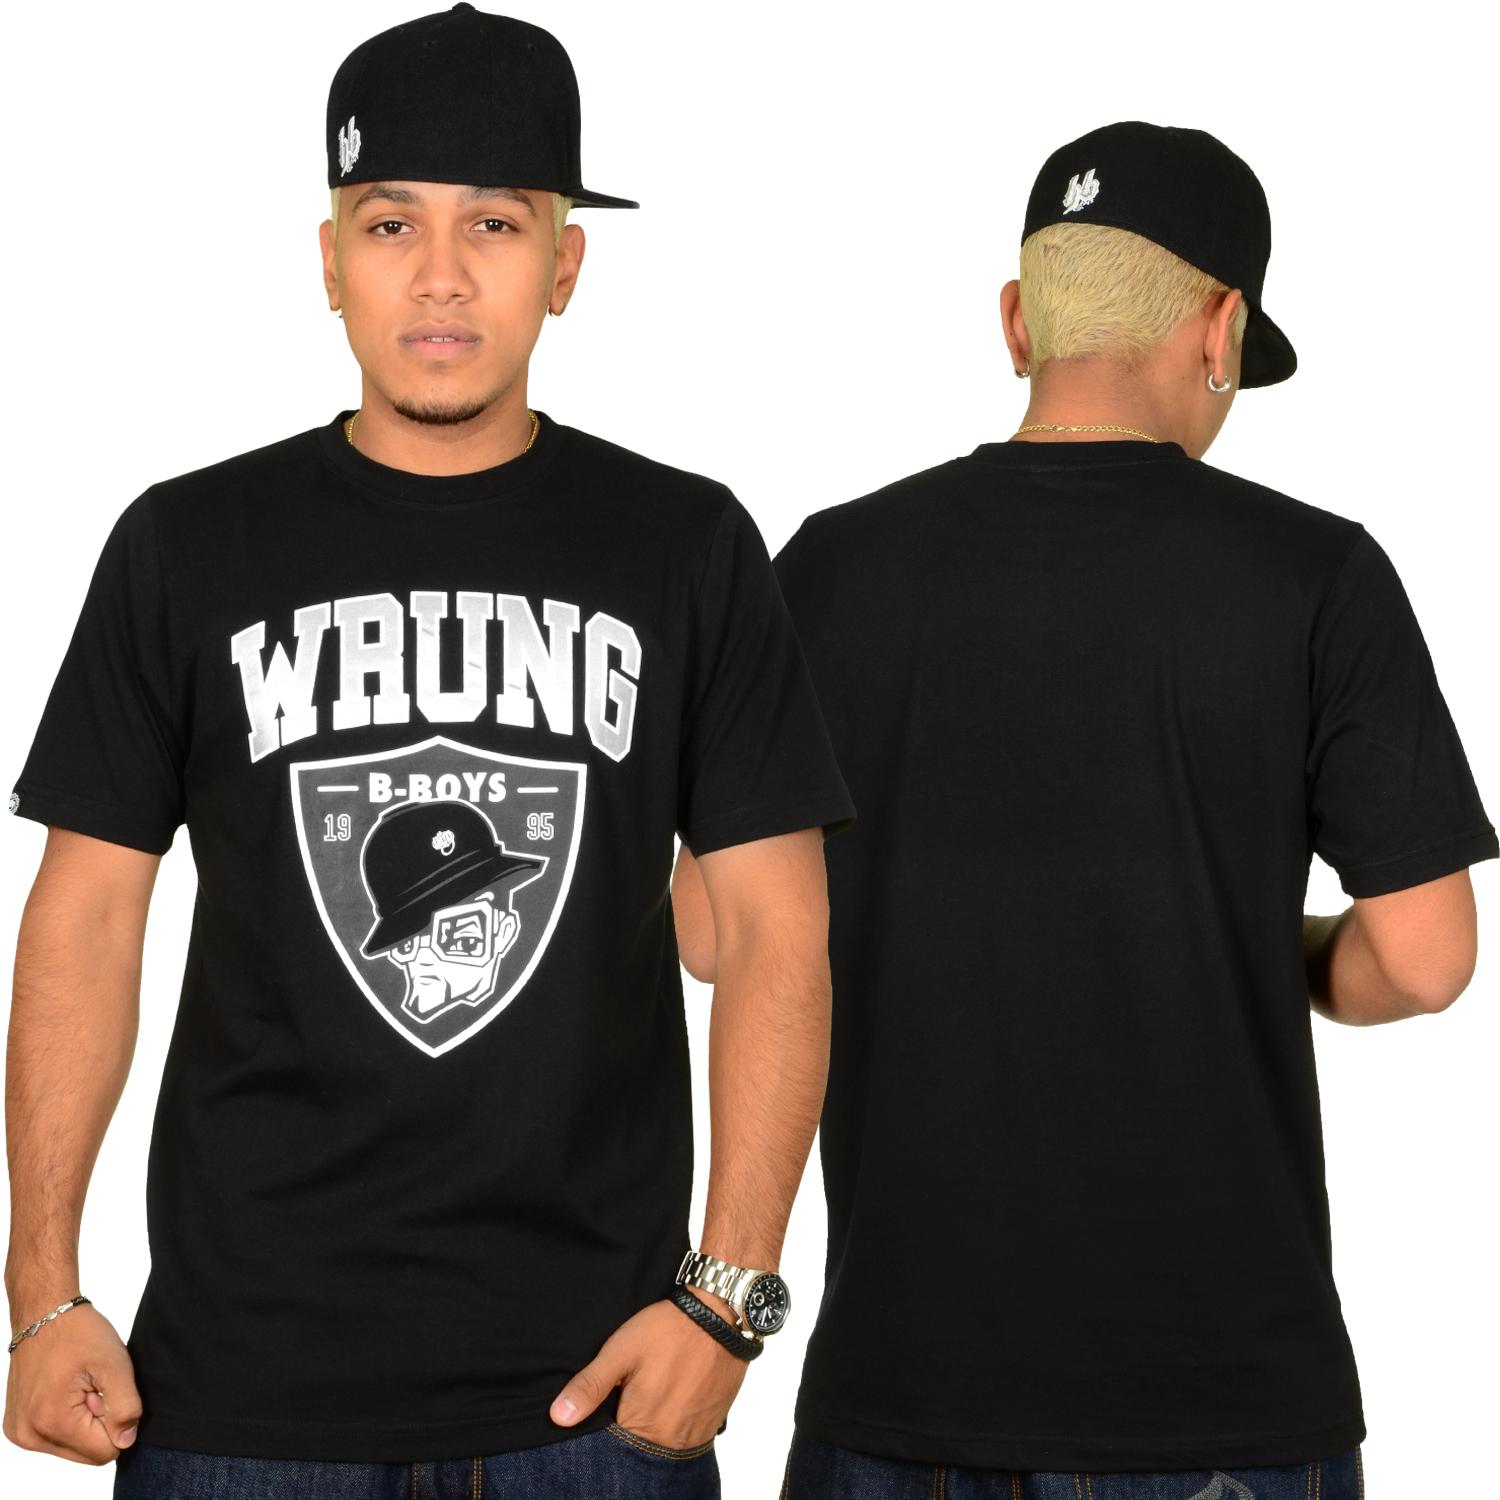 Foto Wrung Division True B-boys Hombres T-shirt Negro